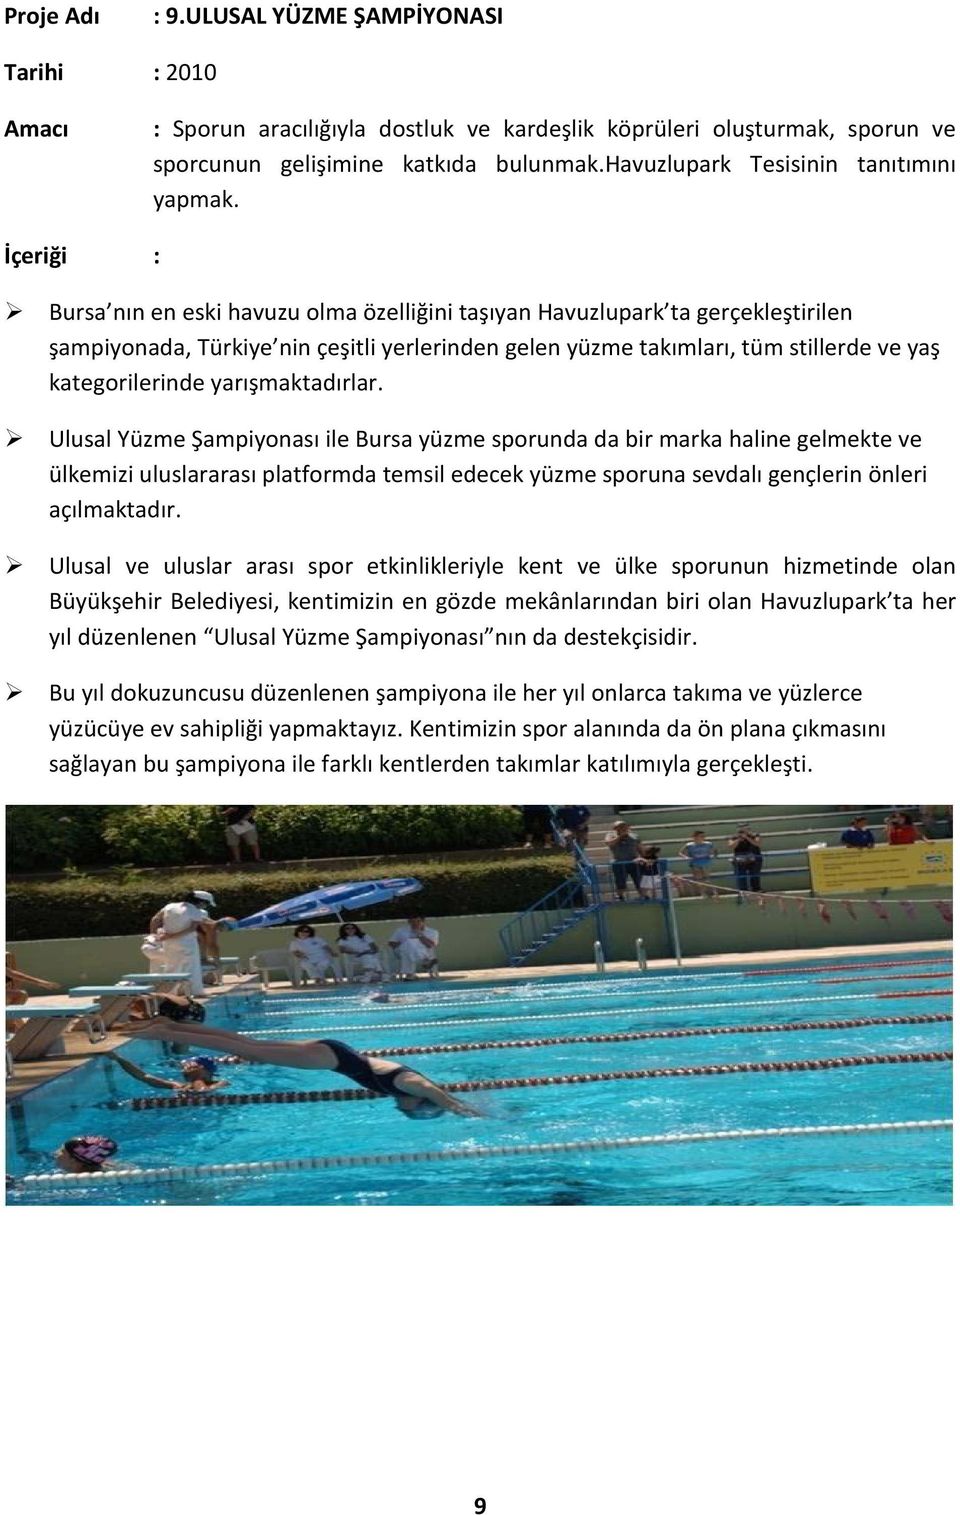 İçeriği : Bursa nın en eski havuzu olma özelliğini taşıyan Havuzlupark ta gerçekleştirilen şampiyonada, Türkiye nin çeşitli yerlerinden gelen yüzme takımları, tüm stillerde ve yaş kategorilerinde